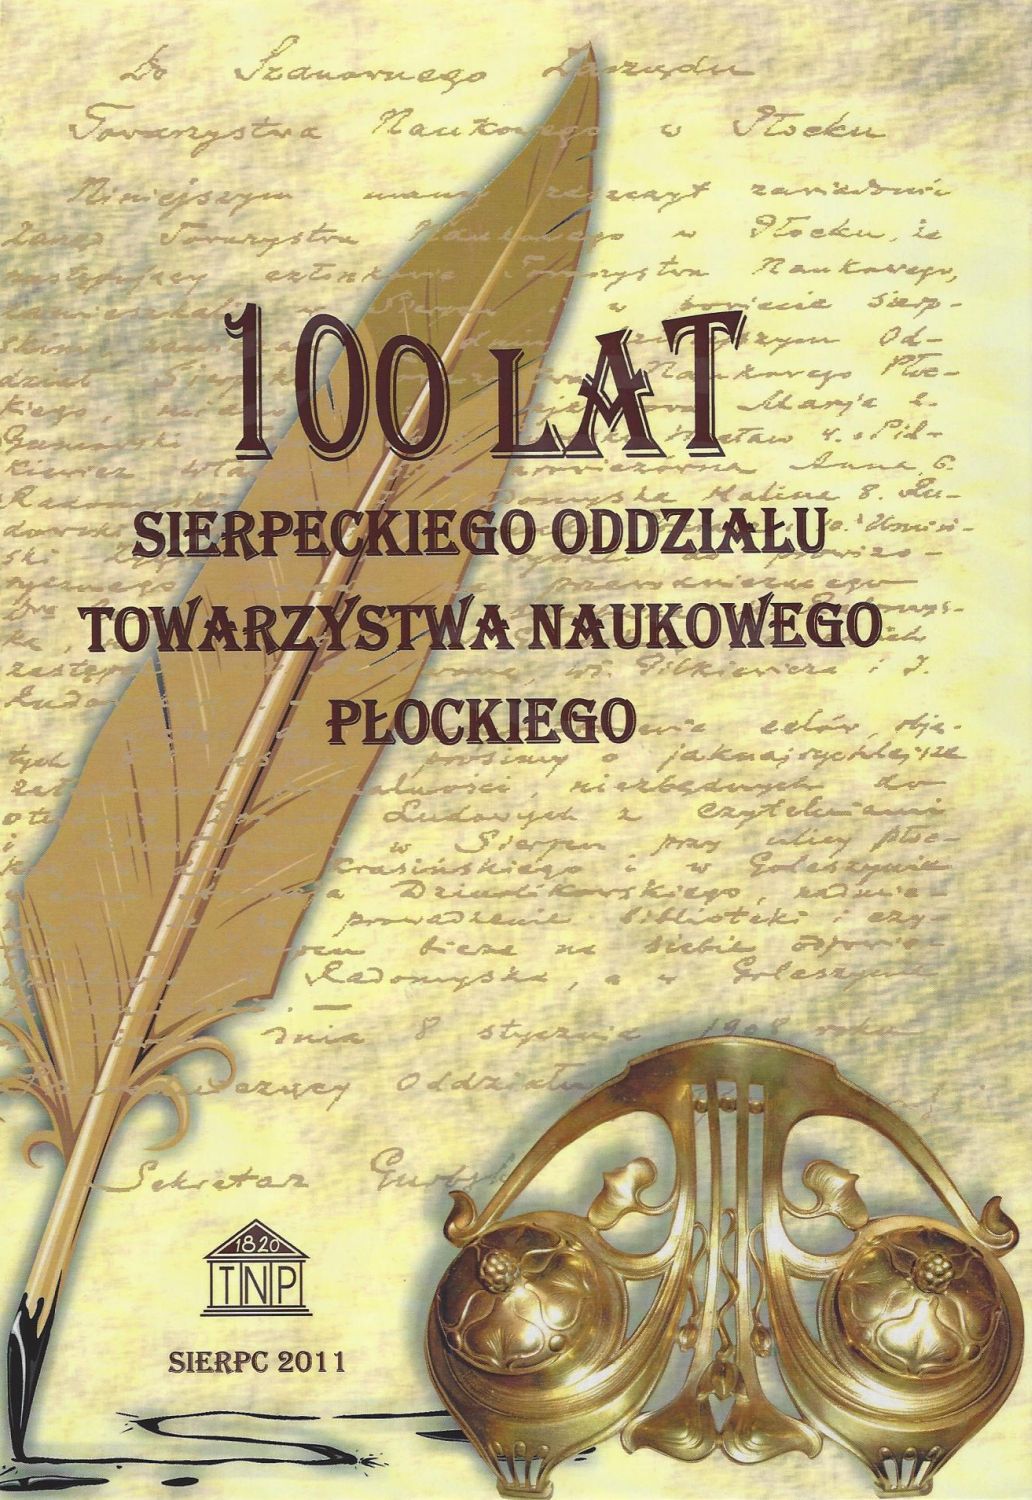 100 lat Sierpeckiego Oddziału Towarzystwa Naukowego Płockiego, praca zbiorowa pod redakcją Henryki Piekarskiej, Sierpc 2011